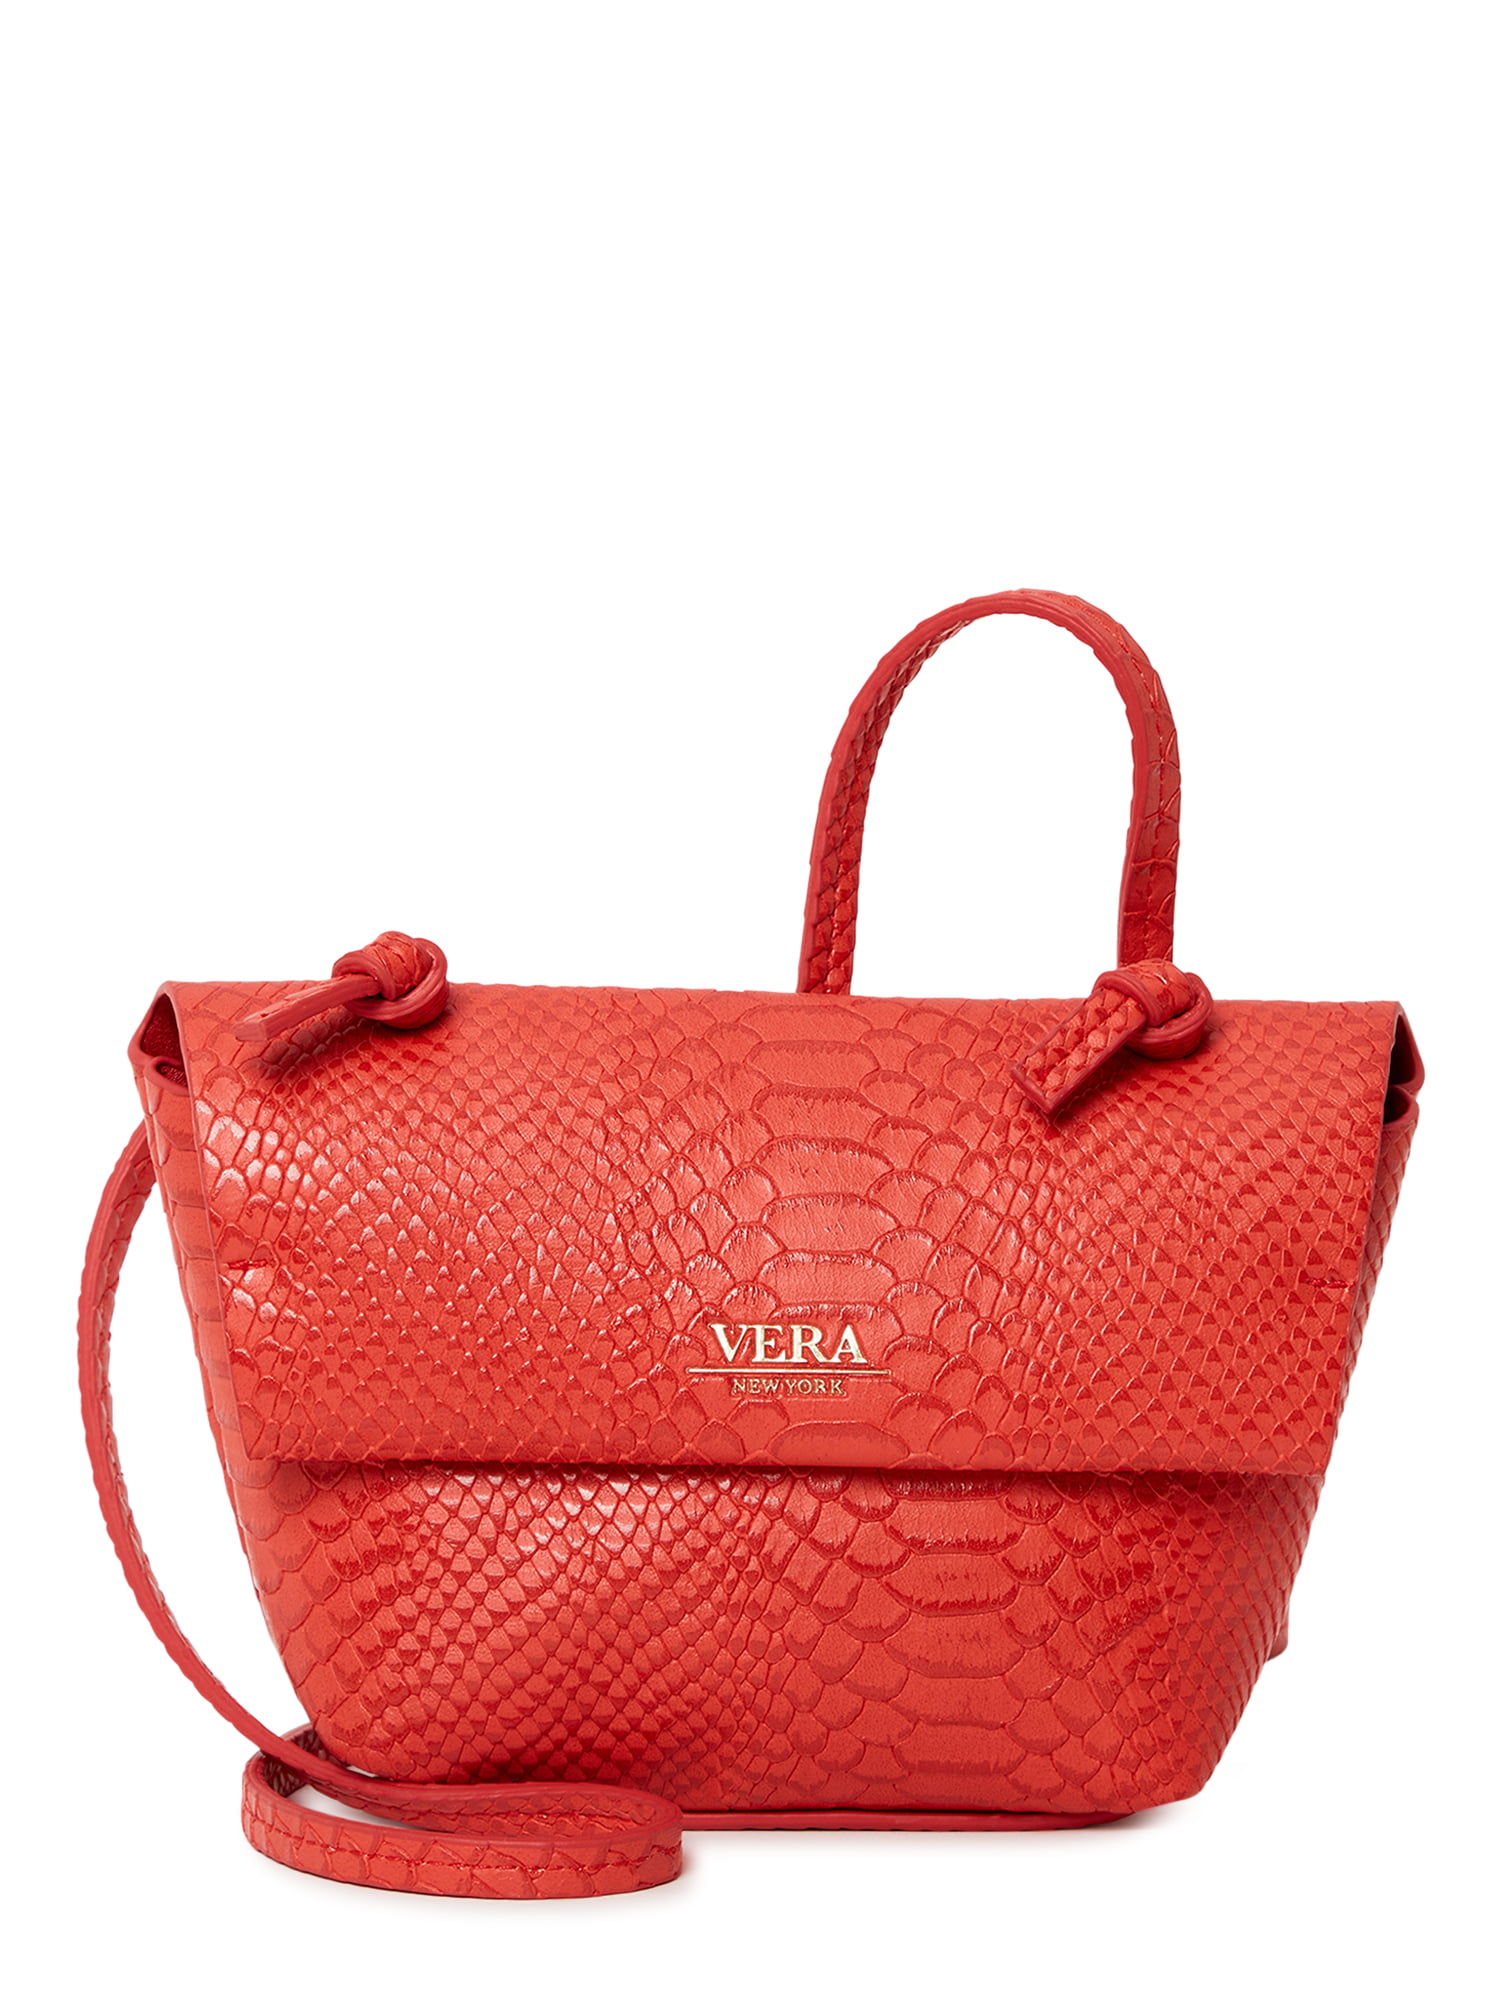 VERA NEW YORK Brick Red Satchel PURSE Crossbody Handbag Ellen Lizard